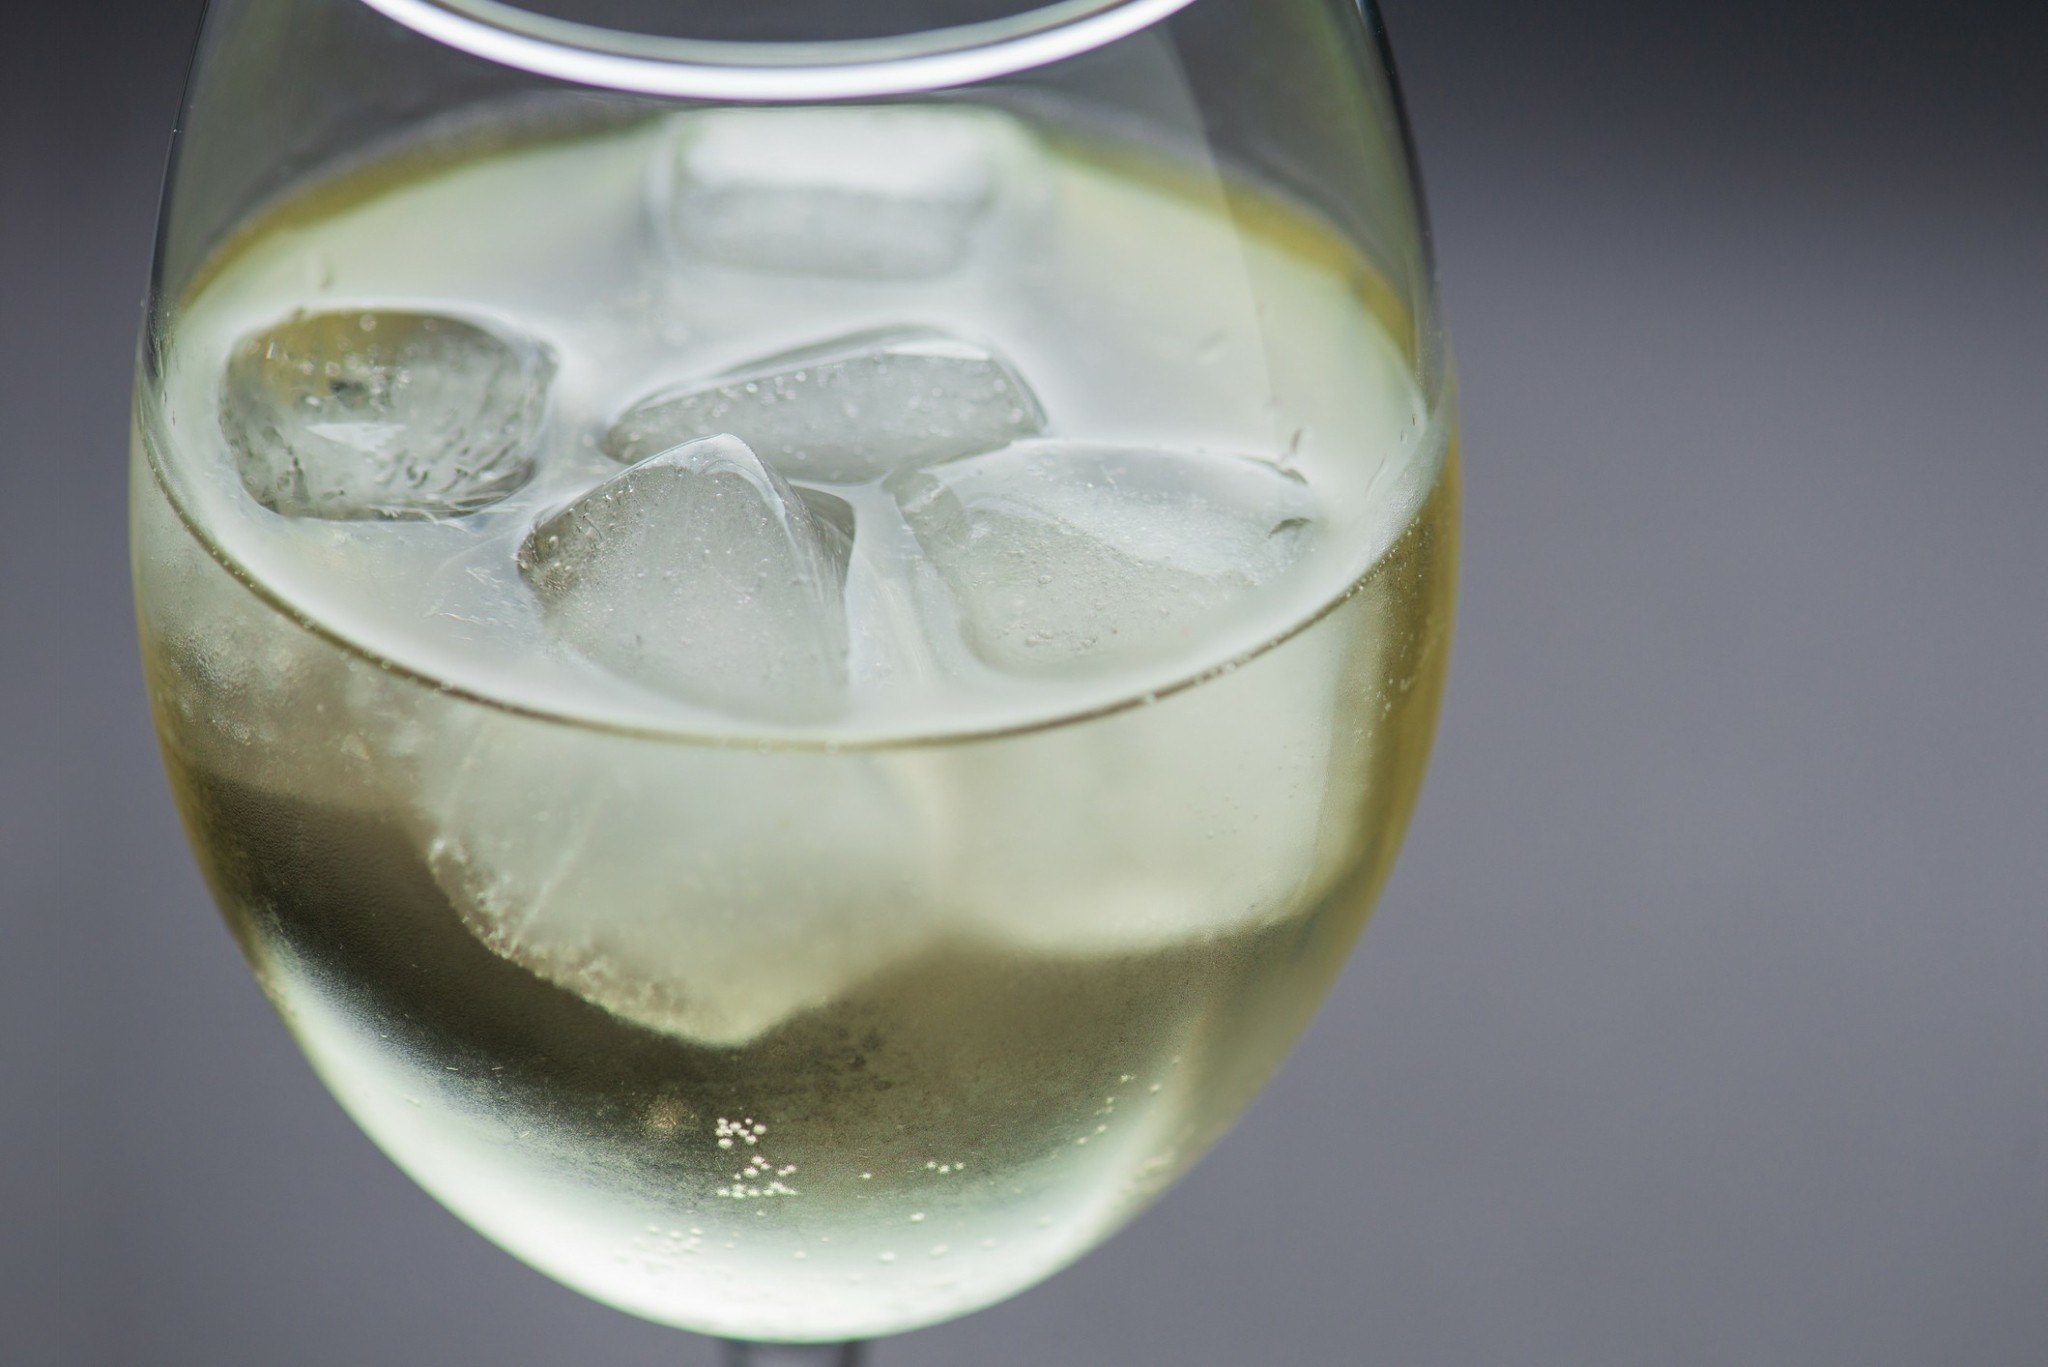 Βάζουμε πάγο στο κρασί; Η απάντηση μπορεί να σας εκπλήξει